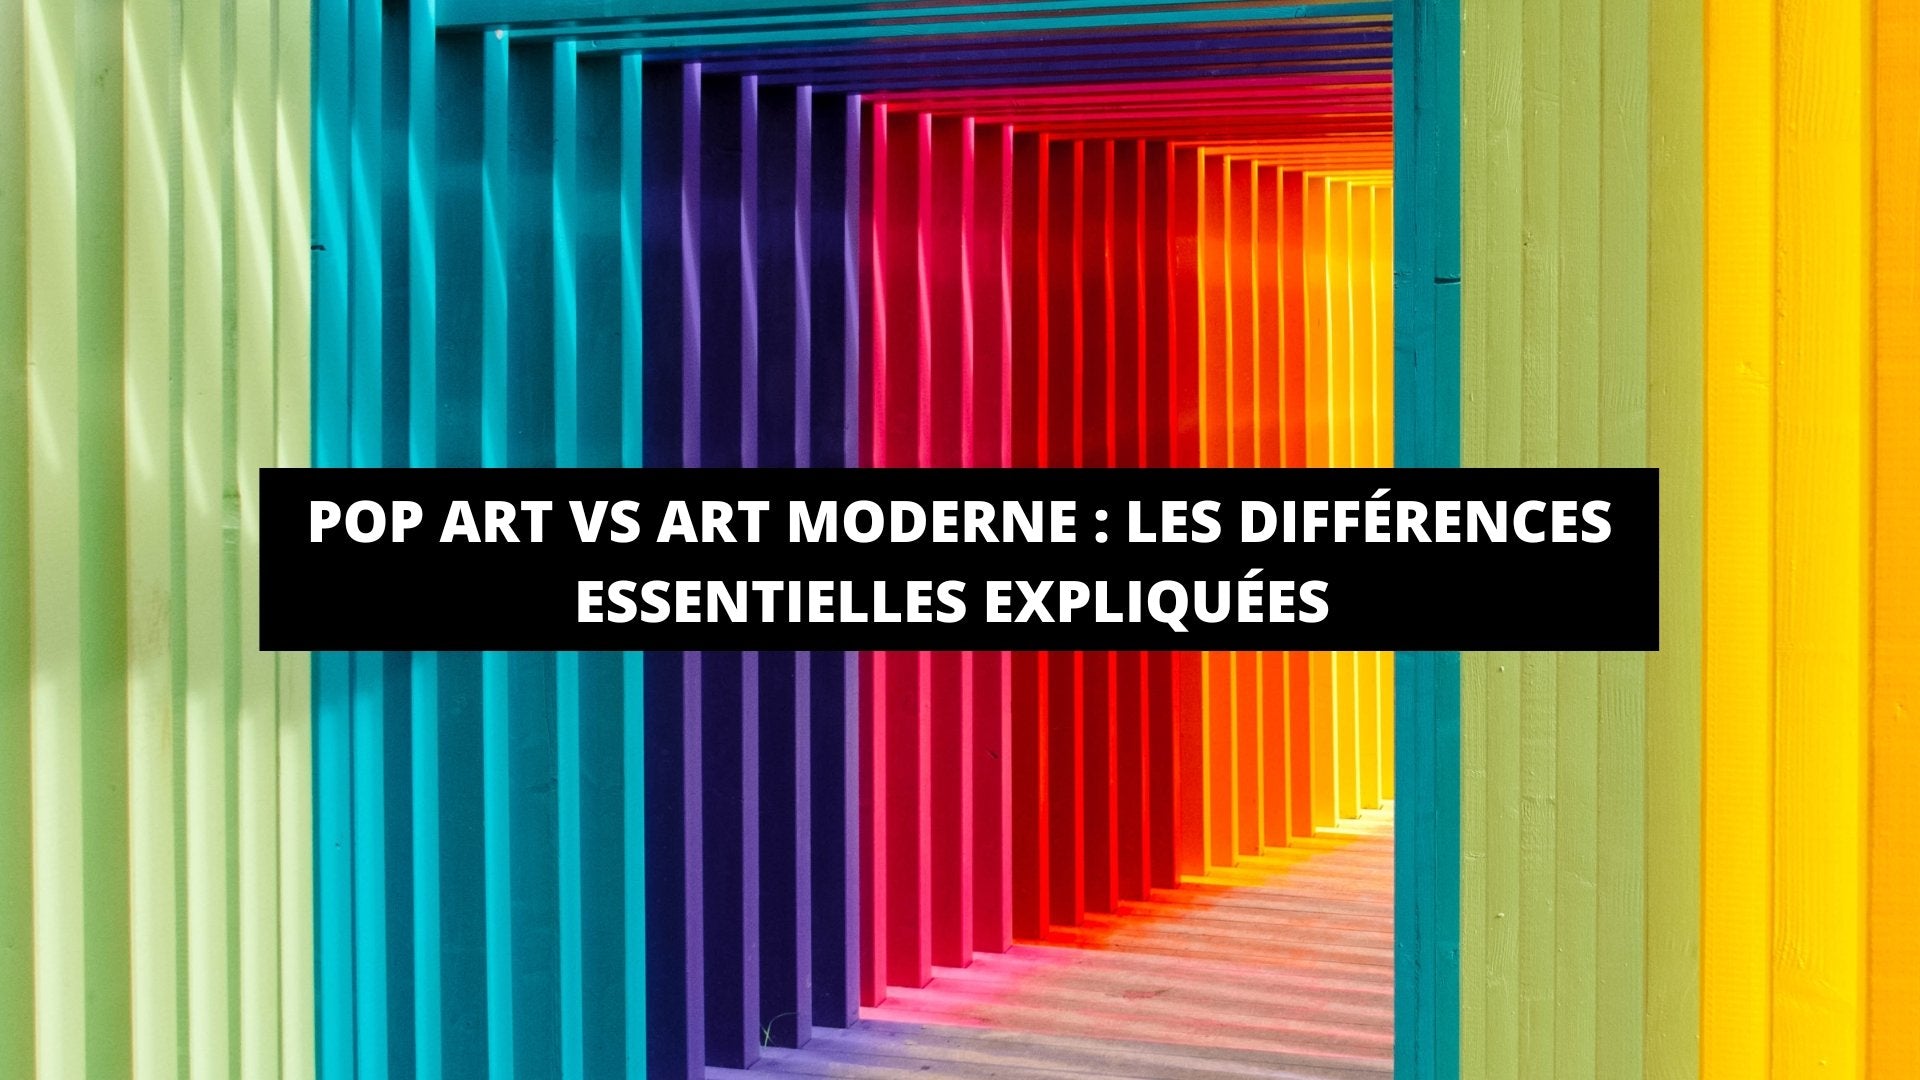 Pop Art VS Art Moderne : Les Différences Essentielles Expliquées - The Art Avenue